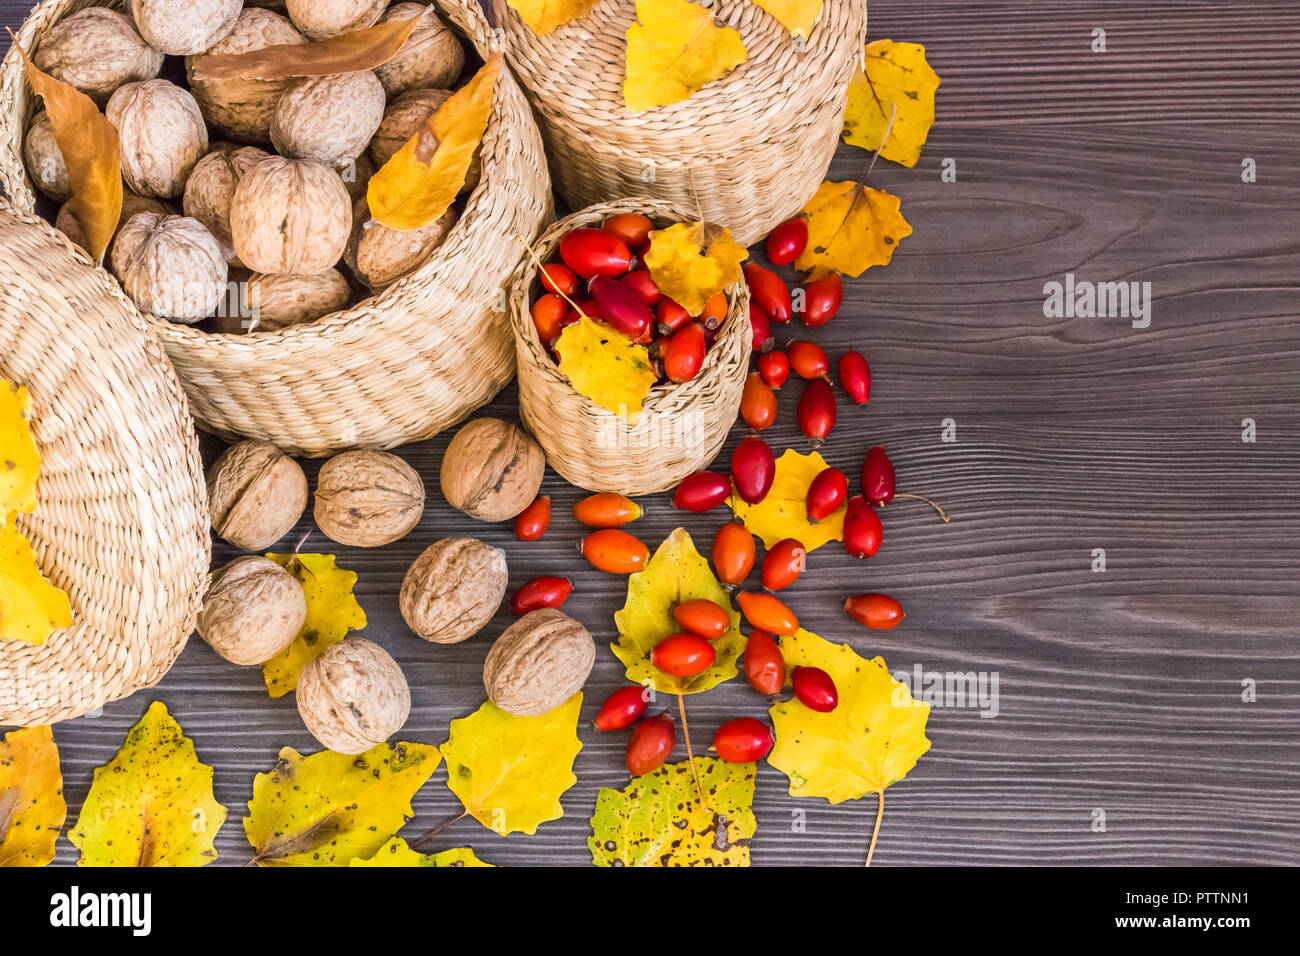 Walnüsse, Hagebutten und gelbe Blätter auf einer hölzernen Oberfläche, gesunde Nahrung aus der Natur. Konzept der Herbst Hintergrund Stockfoto